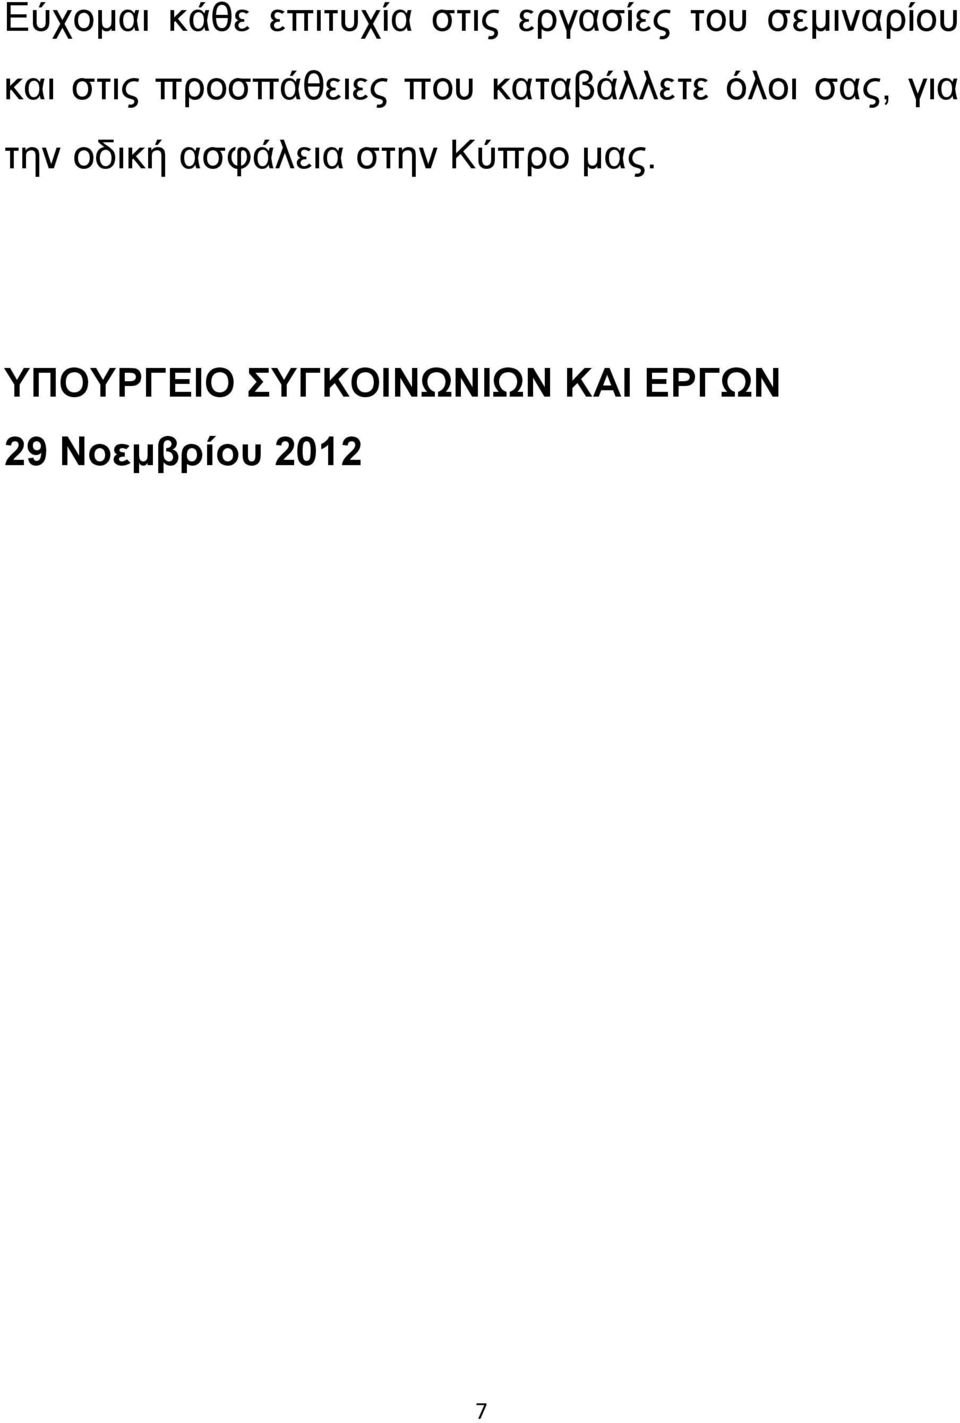 όλοι σας, για την οδική ασφάλεια στην Κύπρο μας.